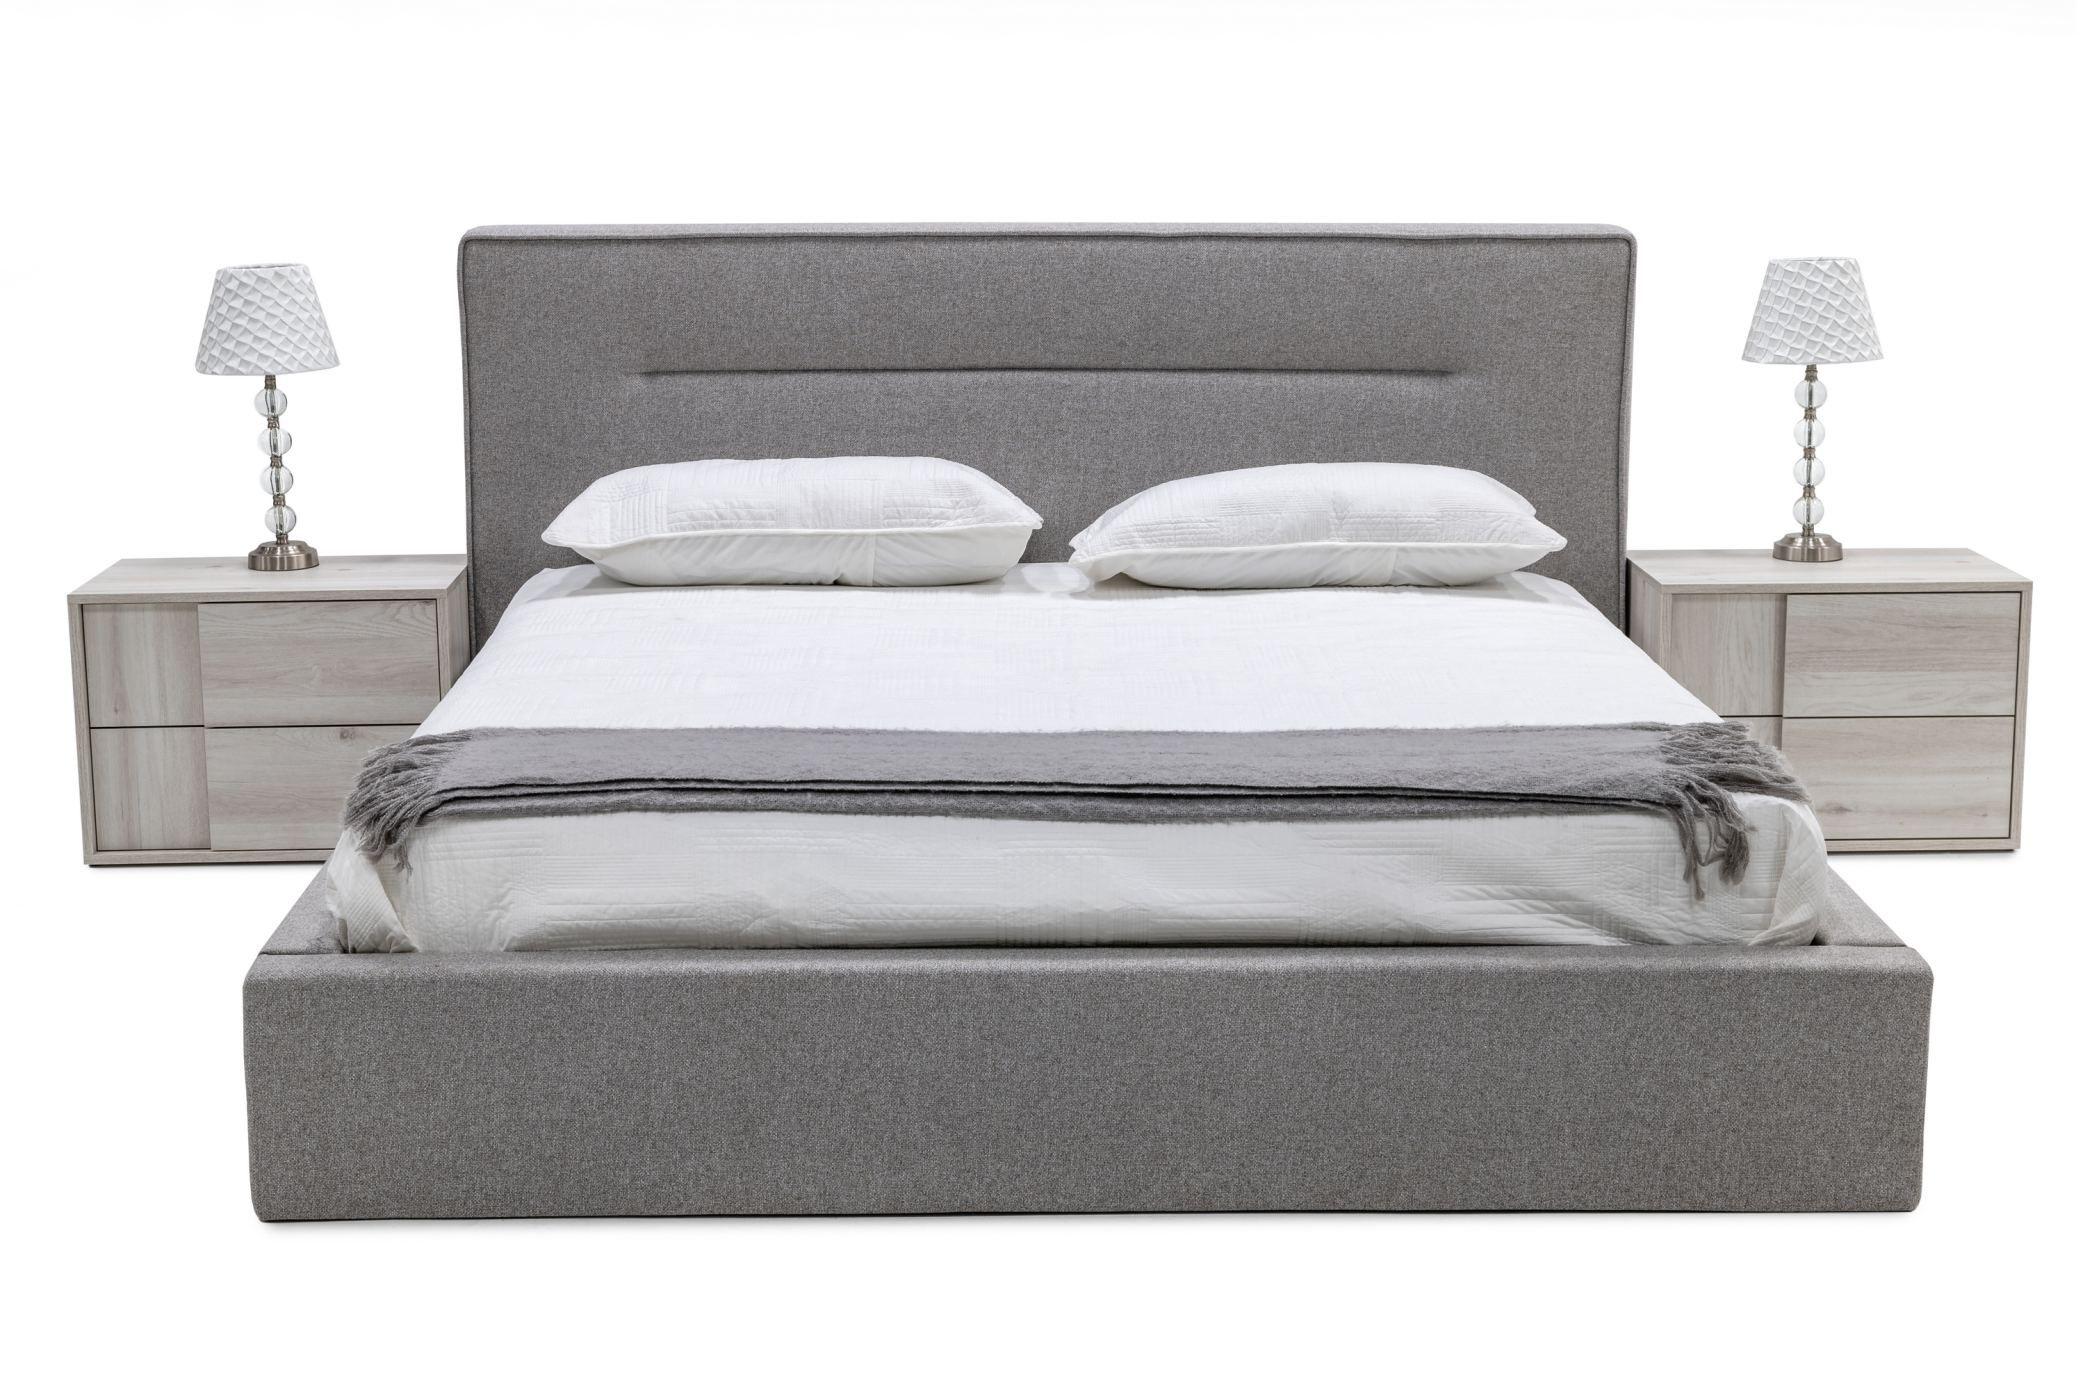 

    
White Oak & Gray Fabric Bed King Panel Bedroom Set by VIG Nova Domus Juliana
